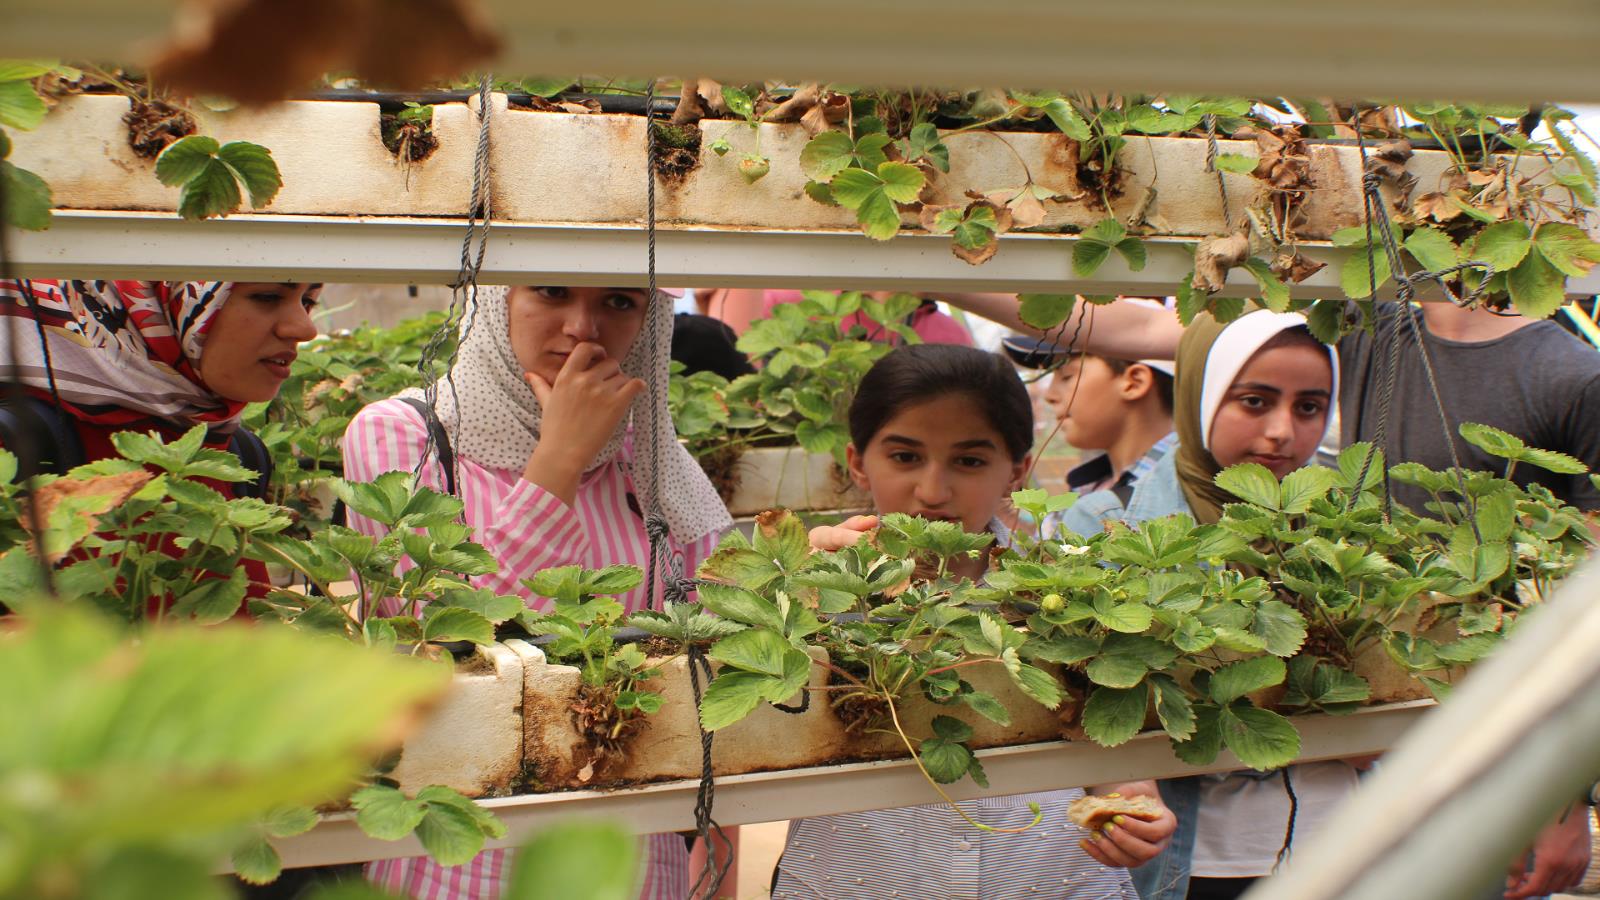 المشاركات في أحد الأماكن الزراعية في قطاع غزة (مبادرة بطوطة/الجزيرة)